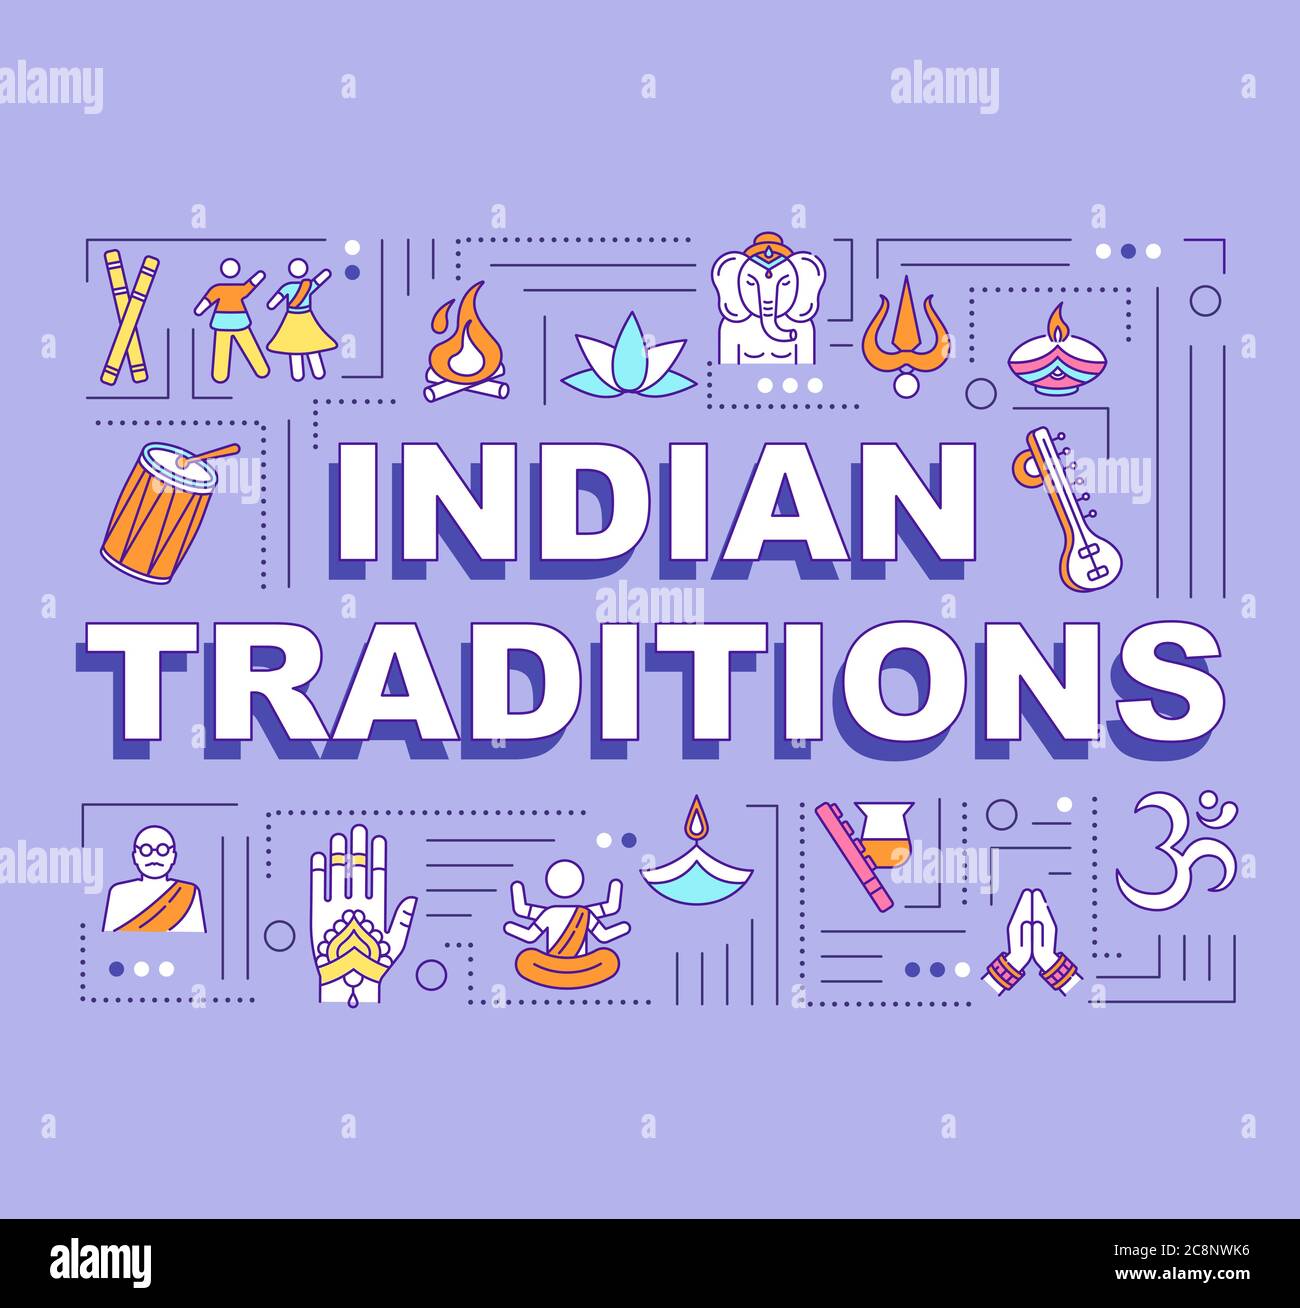 Indische Traditionen Wort Konzepte Banner. Ntional Feiertage und kulturelle Festivals von Indien Infografiken mit linearen Icons auf lila Hintergrund. Isoliert Stock Vektor